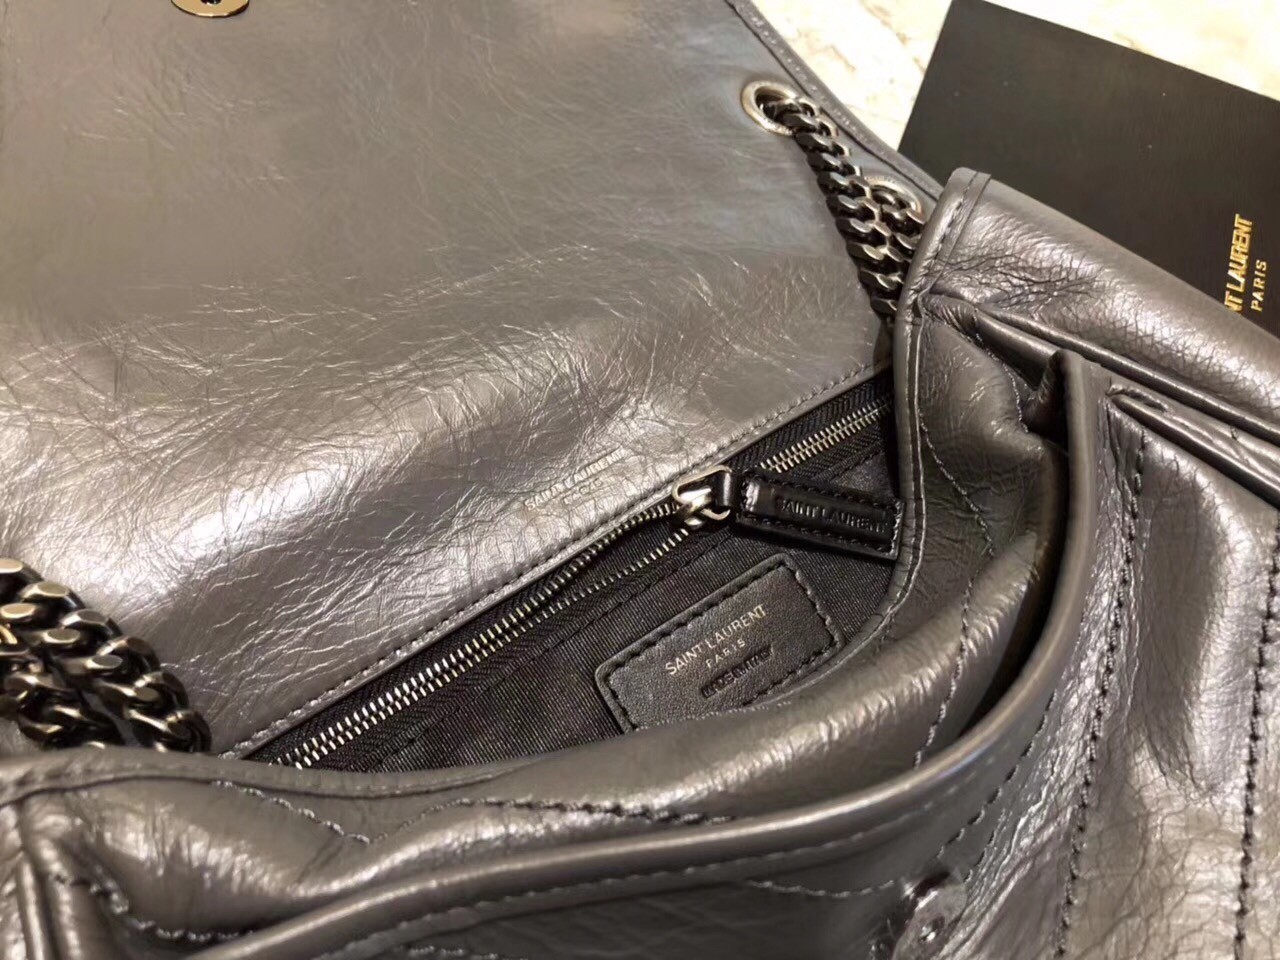 Saint Laurent Medium Niki Bag In Storm Gray Crinkled Leather 107